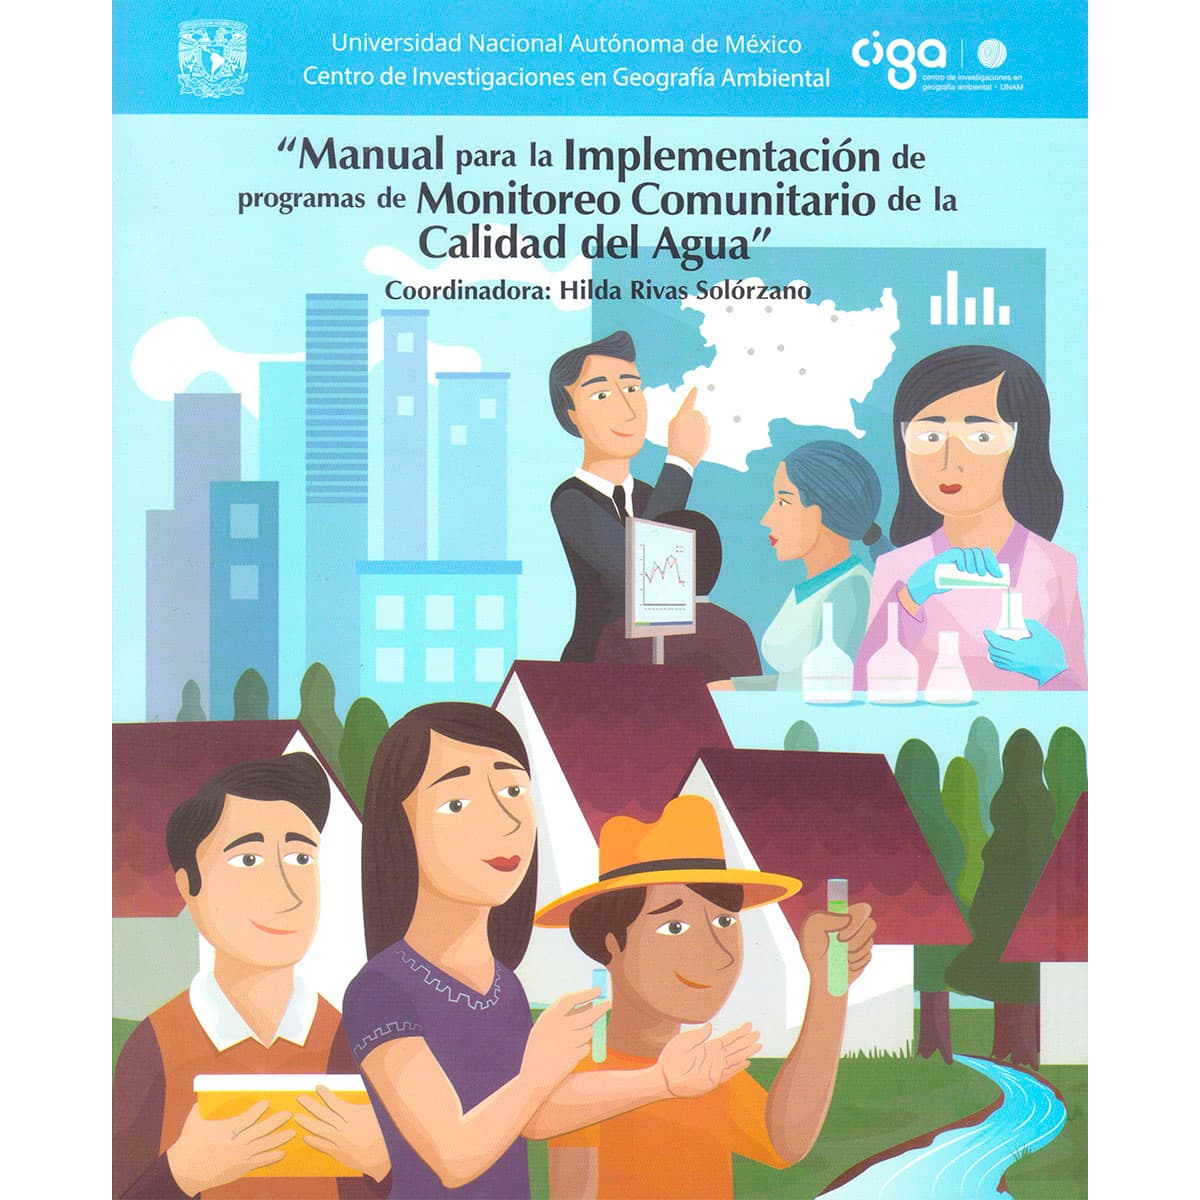 MANUAL PARA LA IMPLEMENTACIÓN DE PROGRAMAS DE MONITOREO COMUNITARIO DE LA CALIDAD DEL AGUA